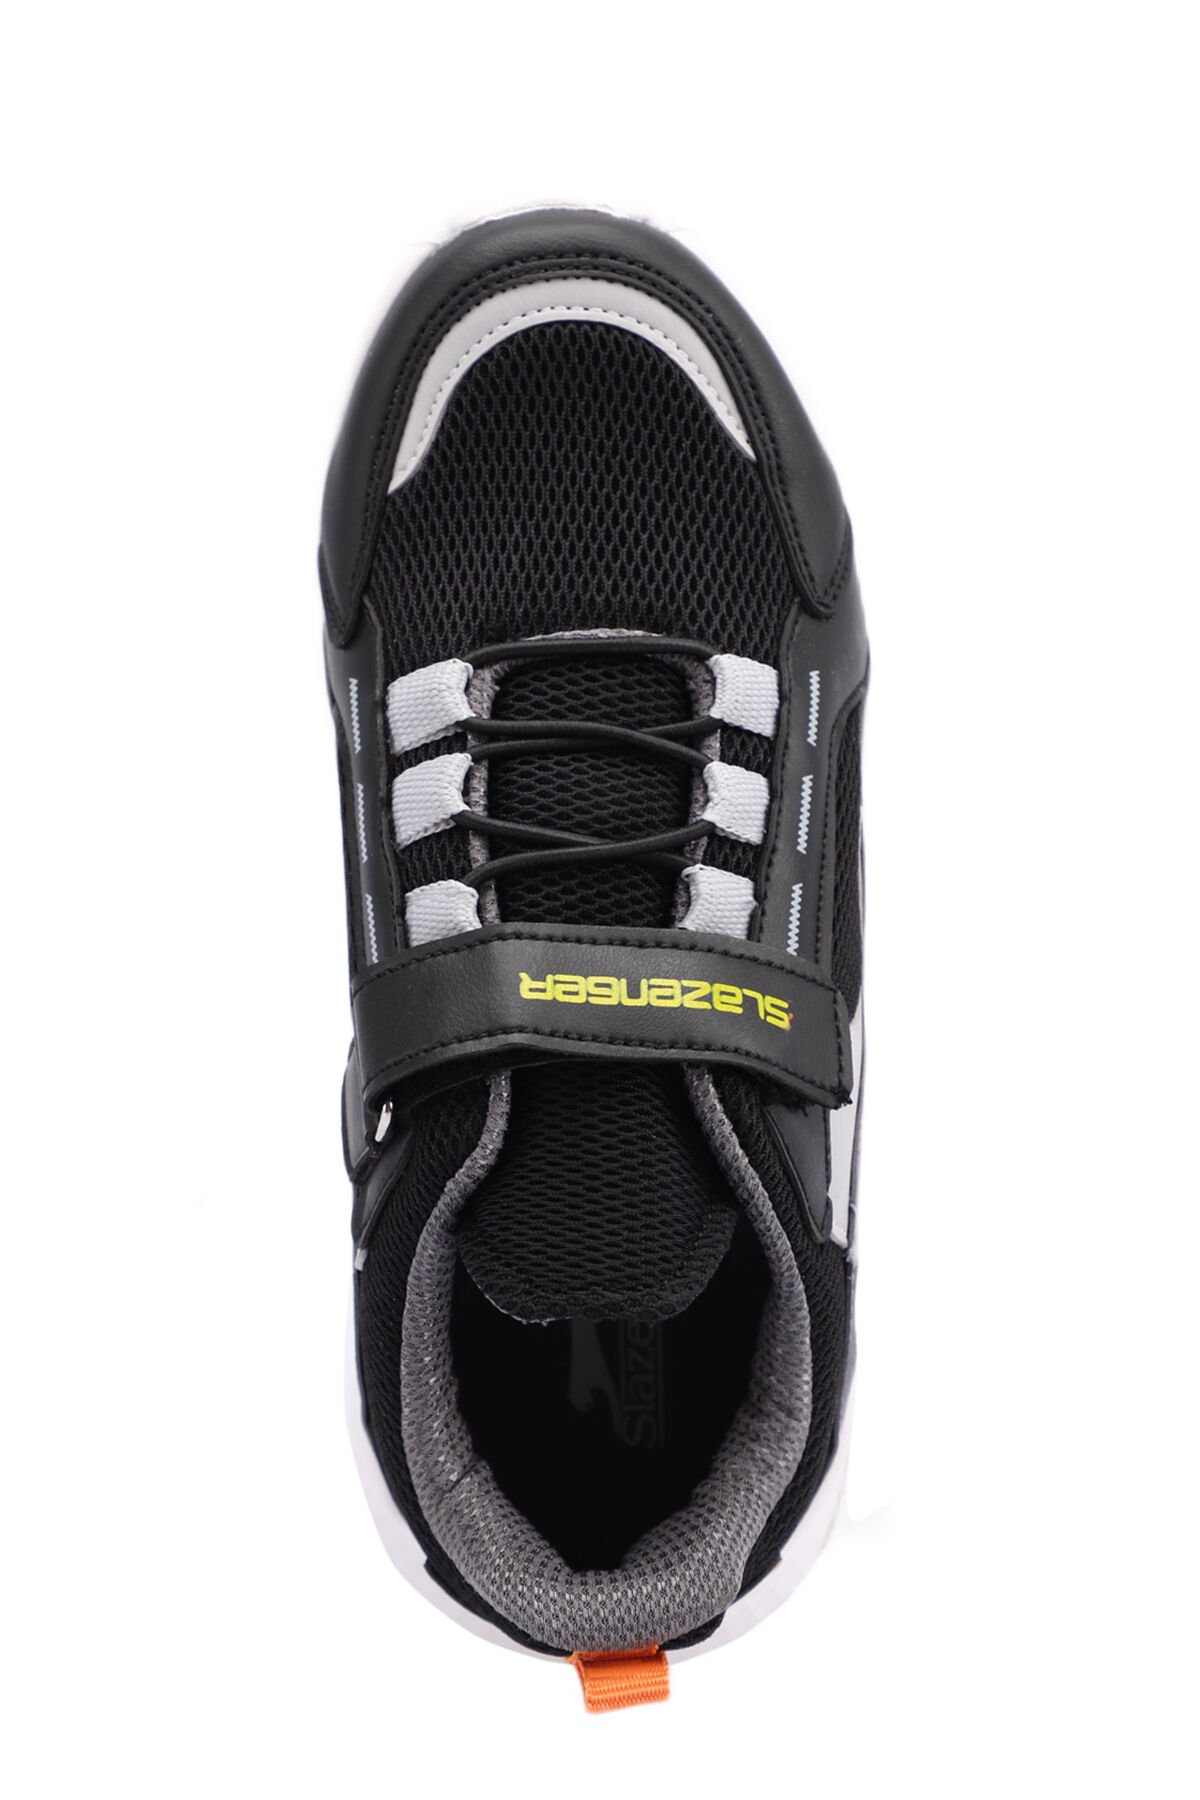 Slazenger KATAYUN Sneaker Erkek Çocuk Ayakkabı Siyah / Gri - Thumbnail